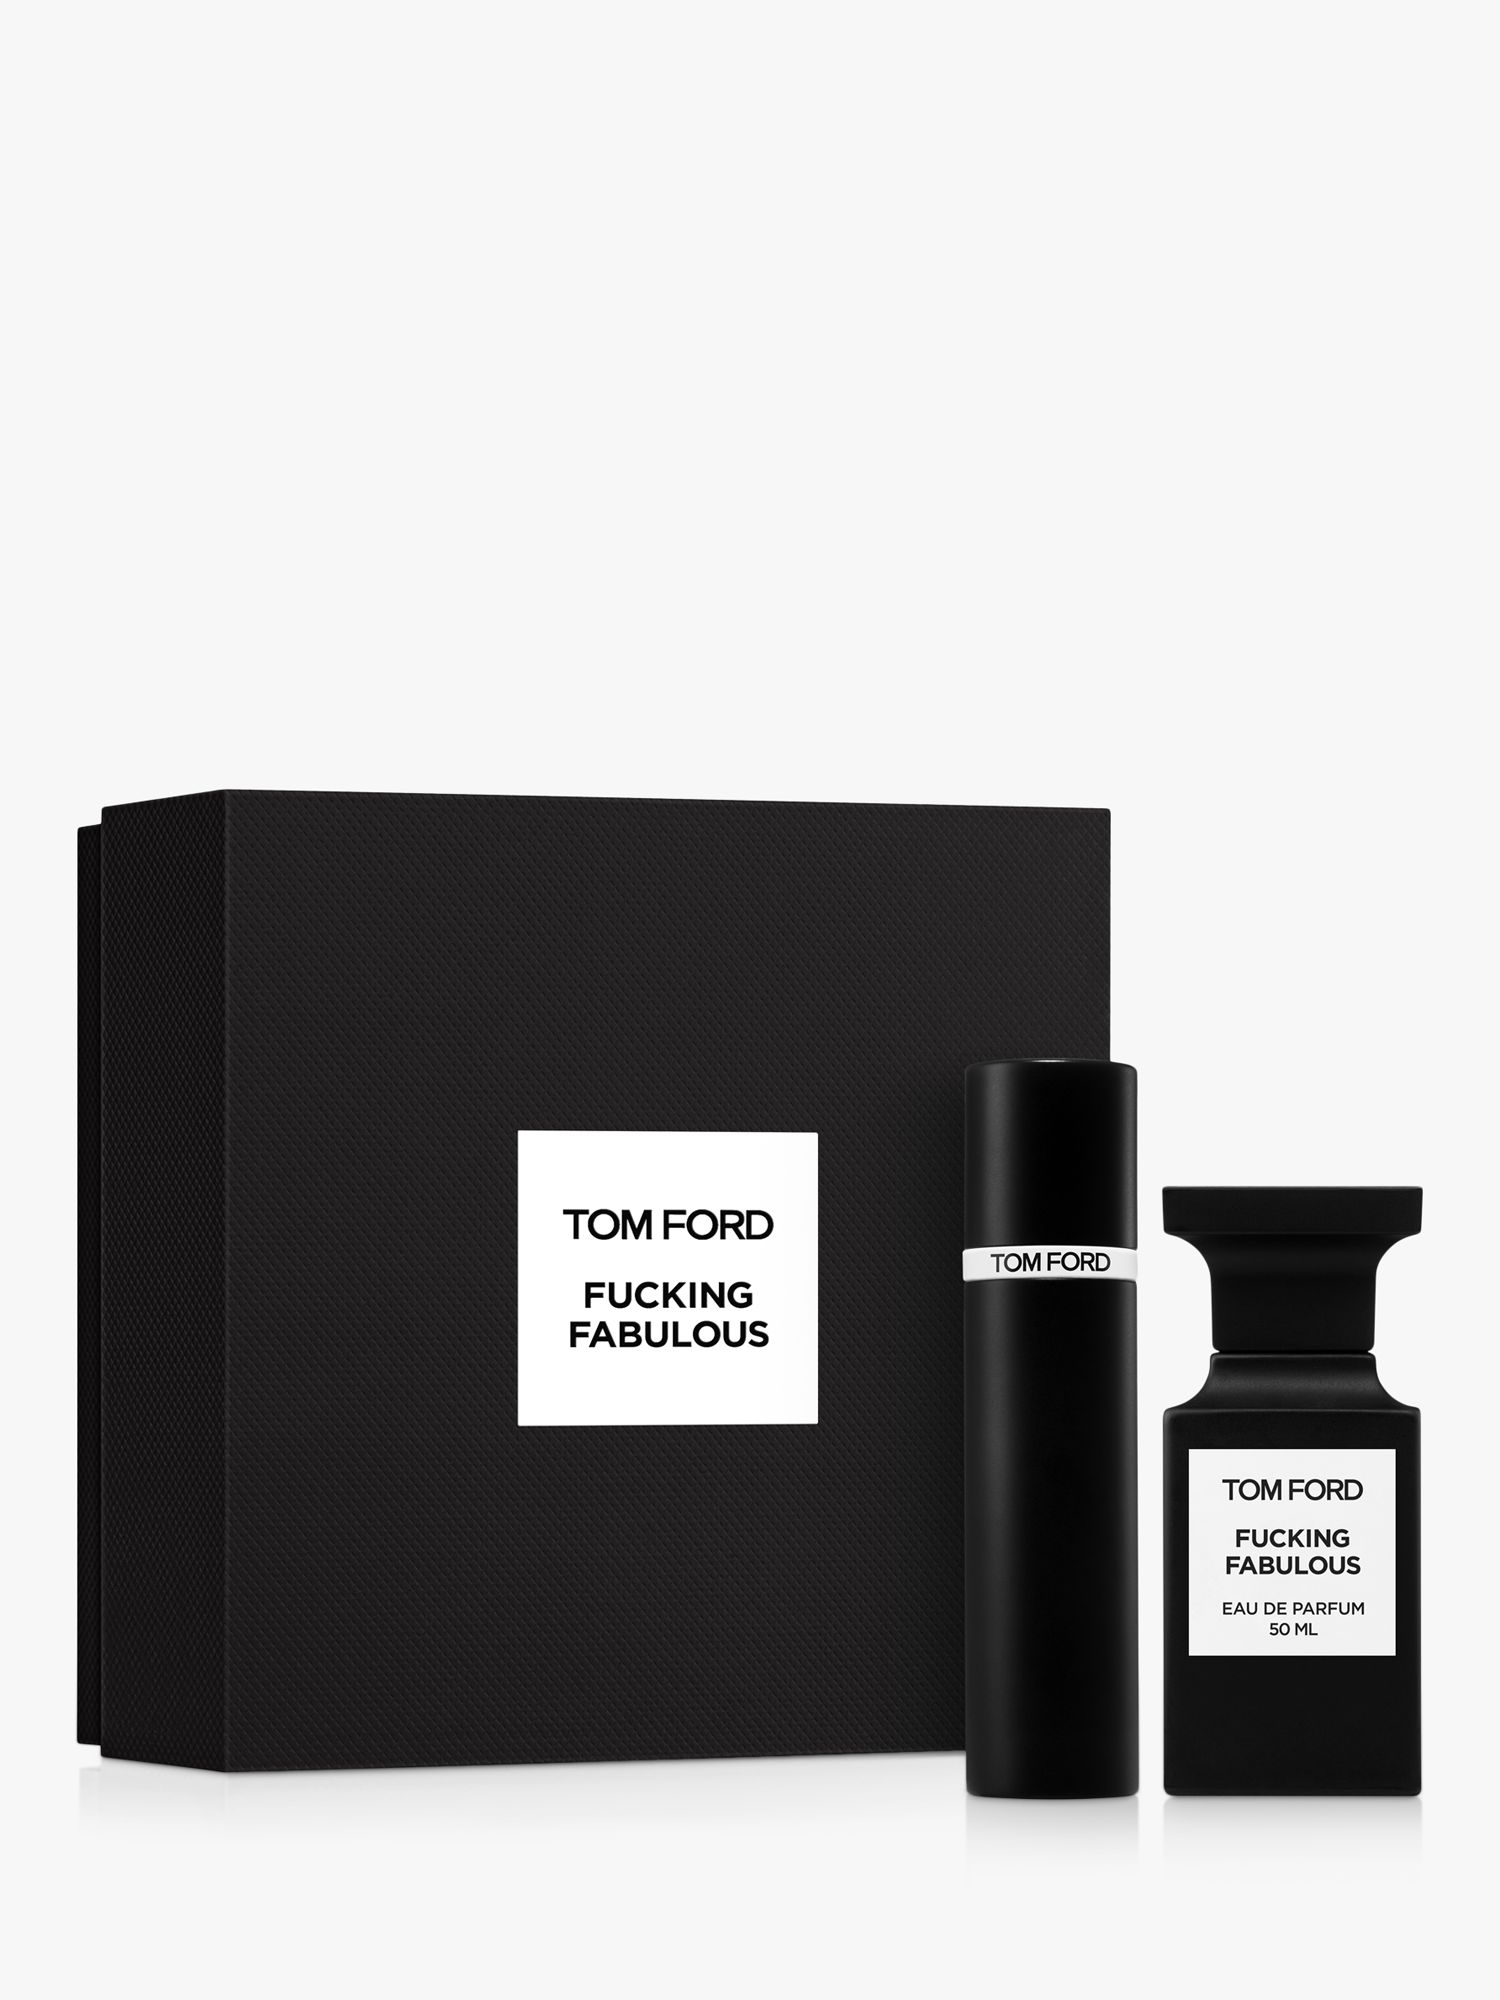 TOM FORD Private Blend Fabulous Eau de Parfum 50ml Fragrance Gift Set ...